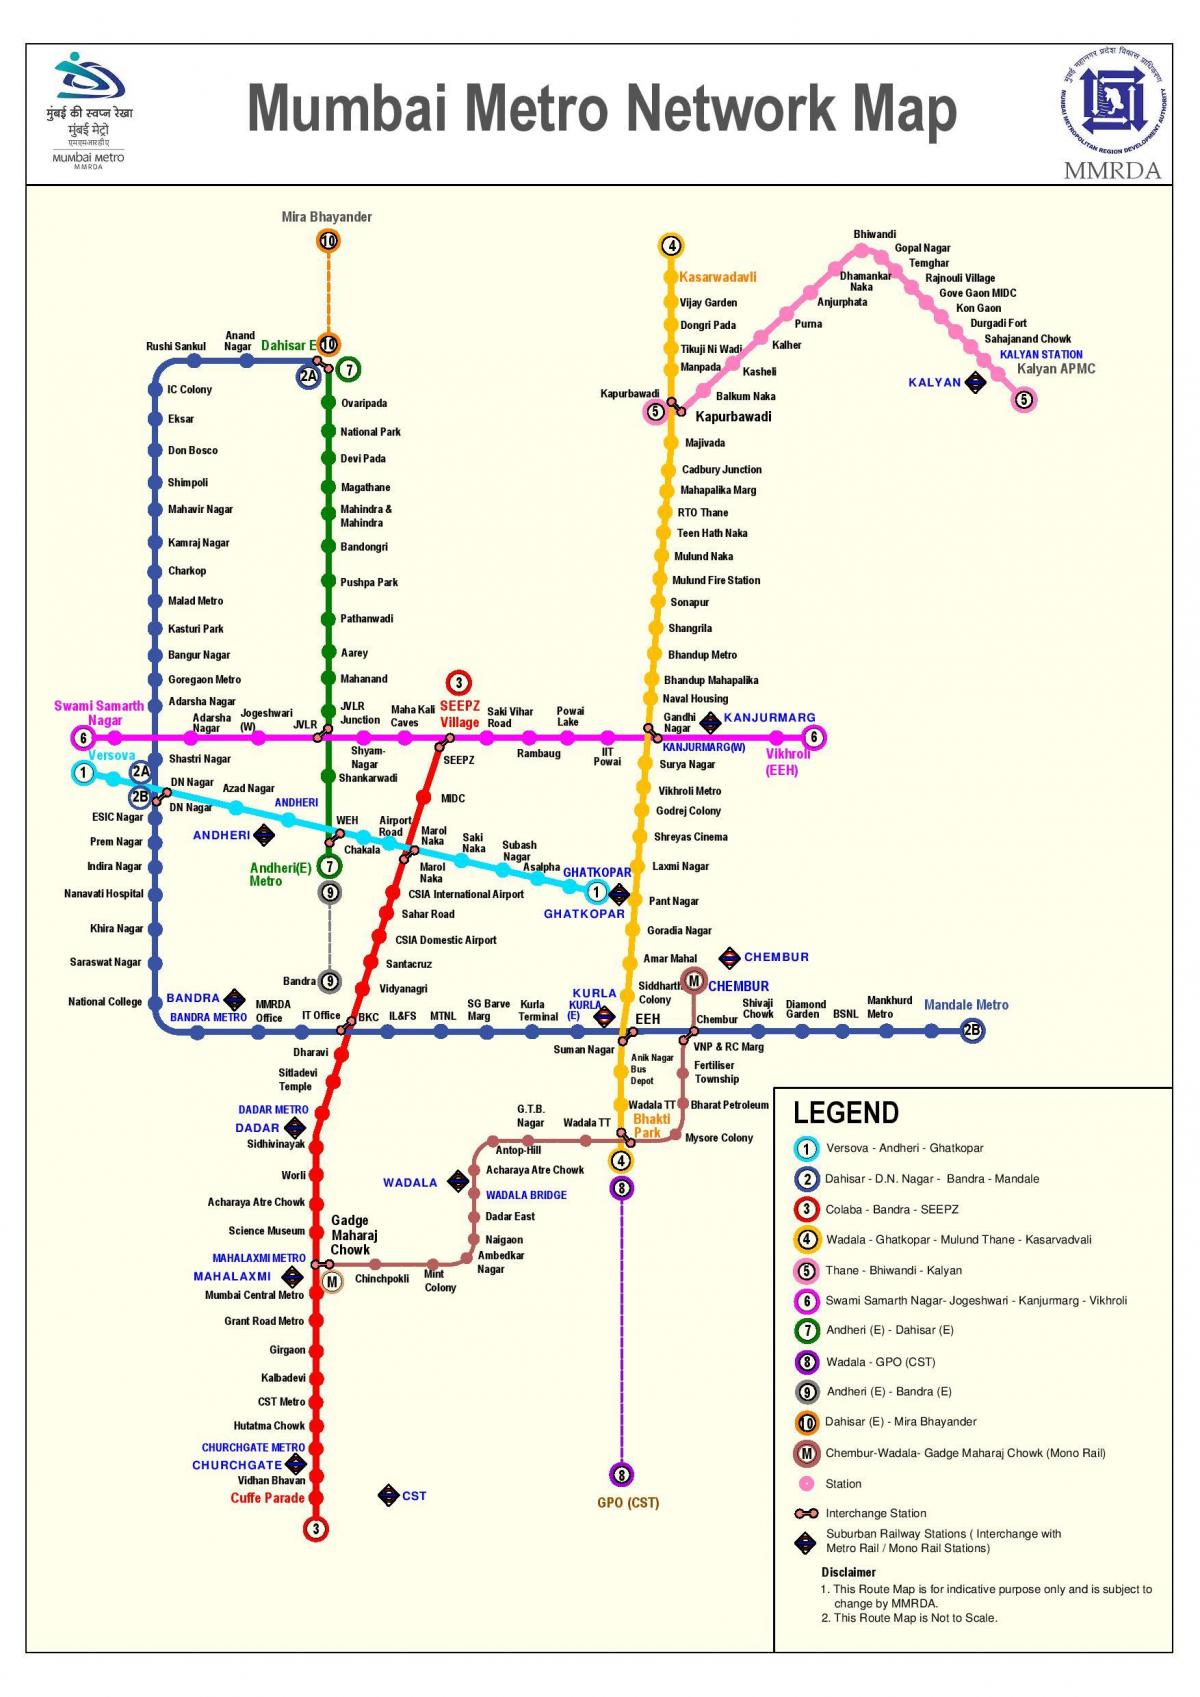 Մետրոյի Մումբայի երթուղին քարտեզի վրա